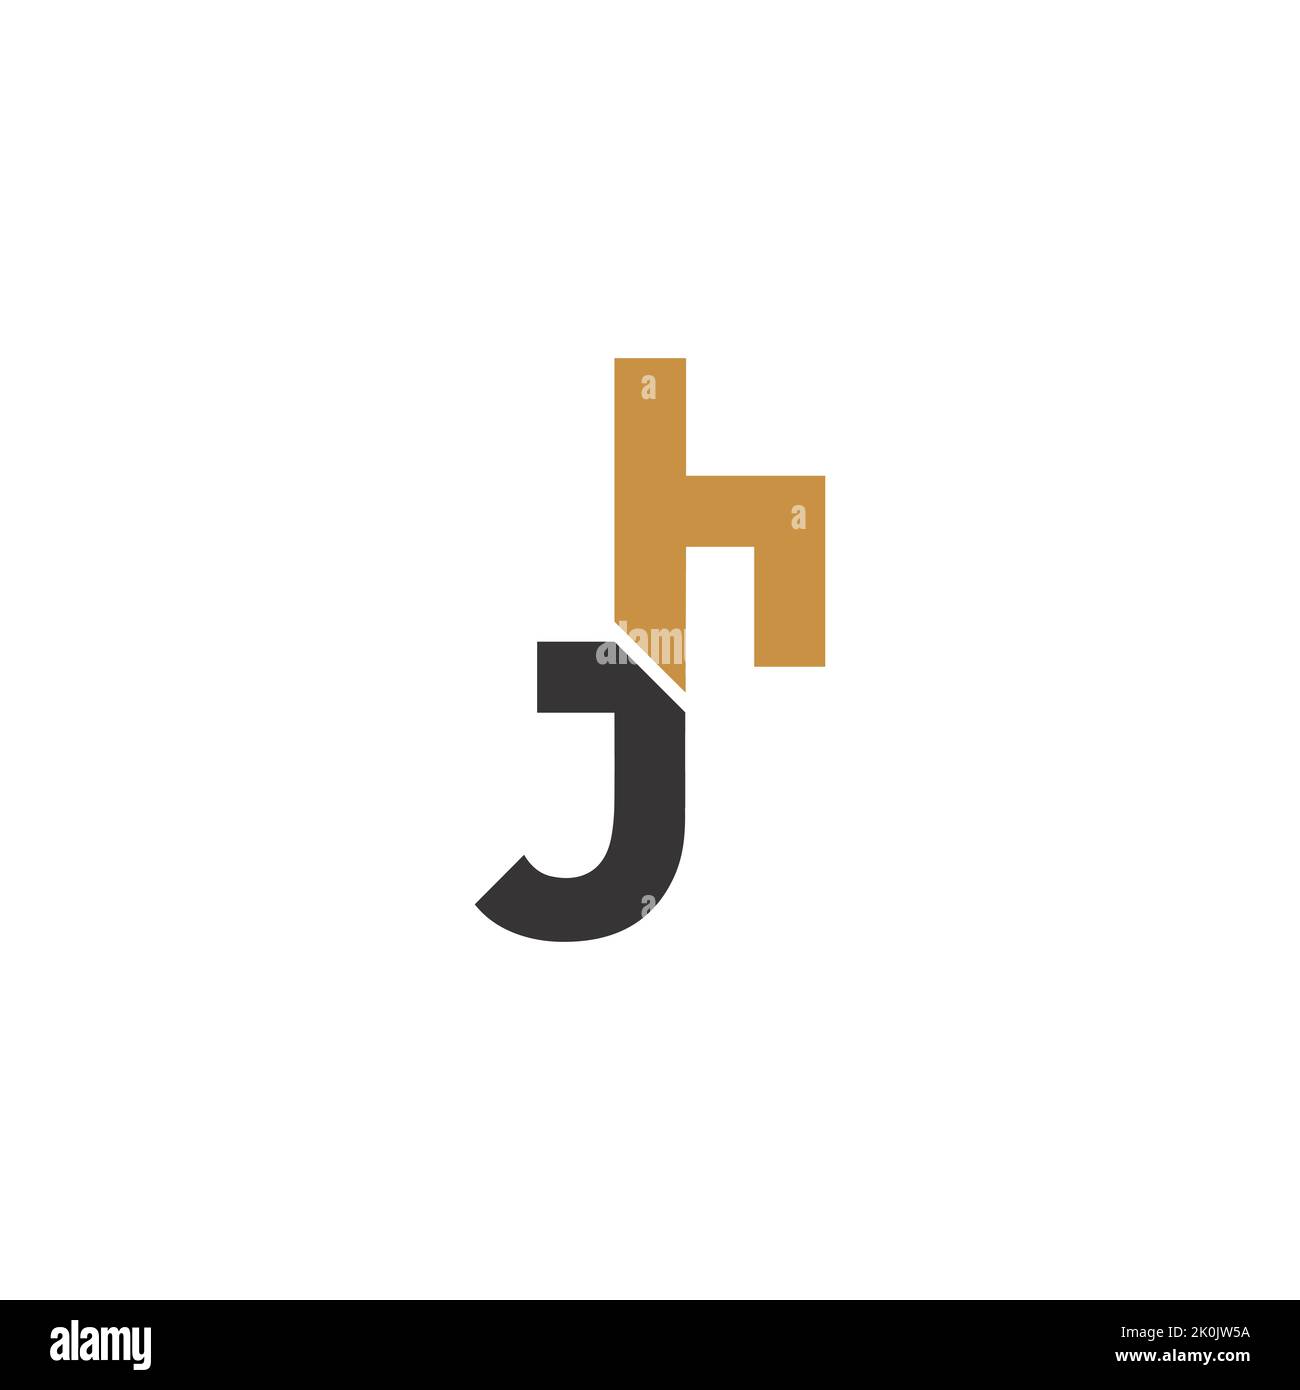 HJ, JH, H E J Abstract iniziale monogramma lettera alfabeto disegno. Illustrazione Vettoriale